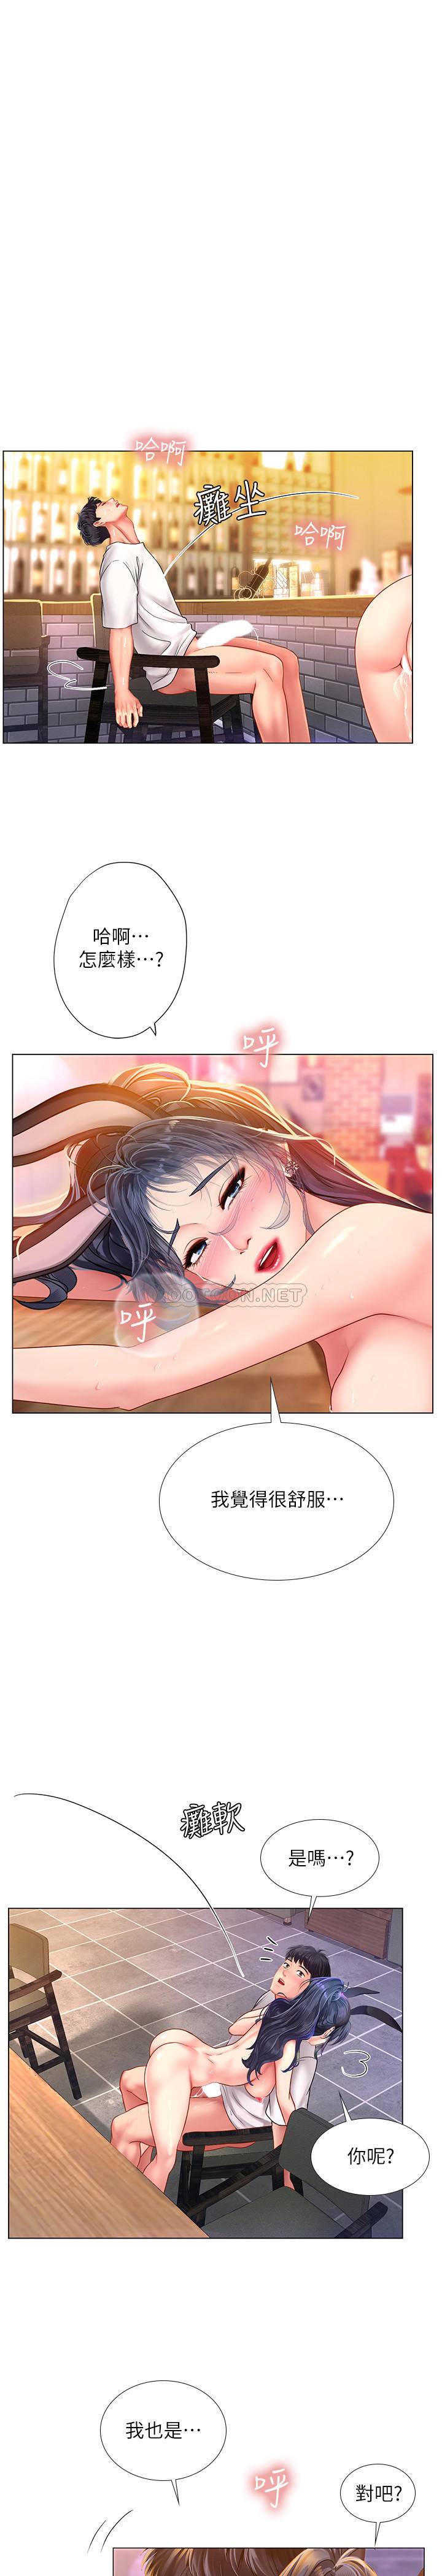 韩国污漫画 享樂補習街 第66话 21